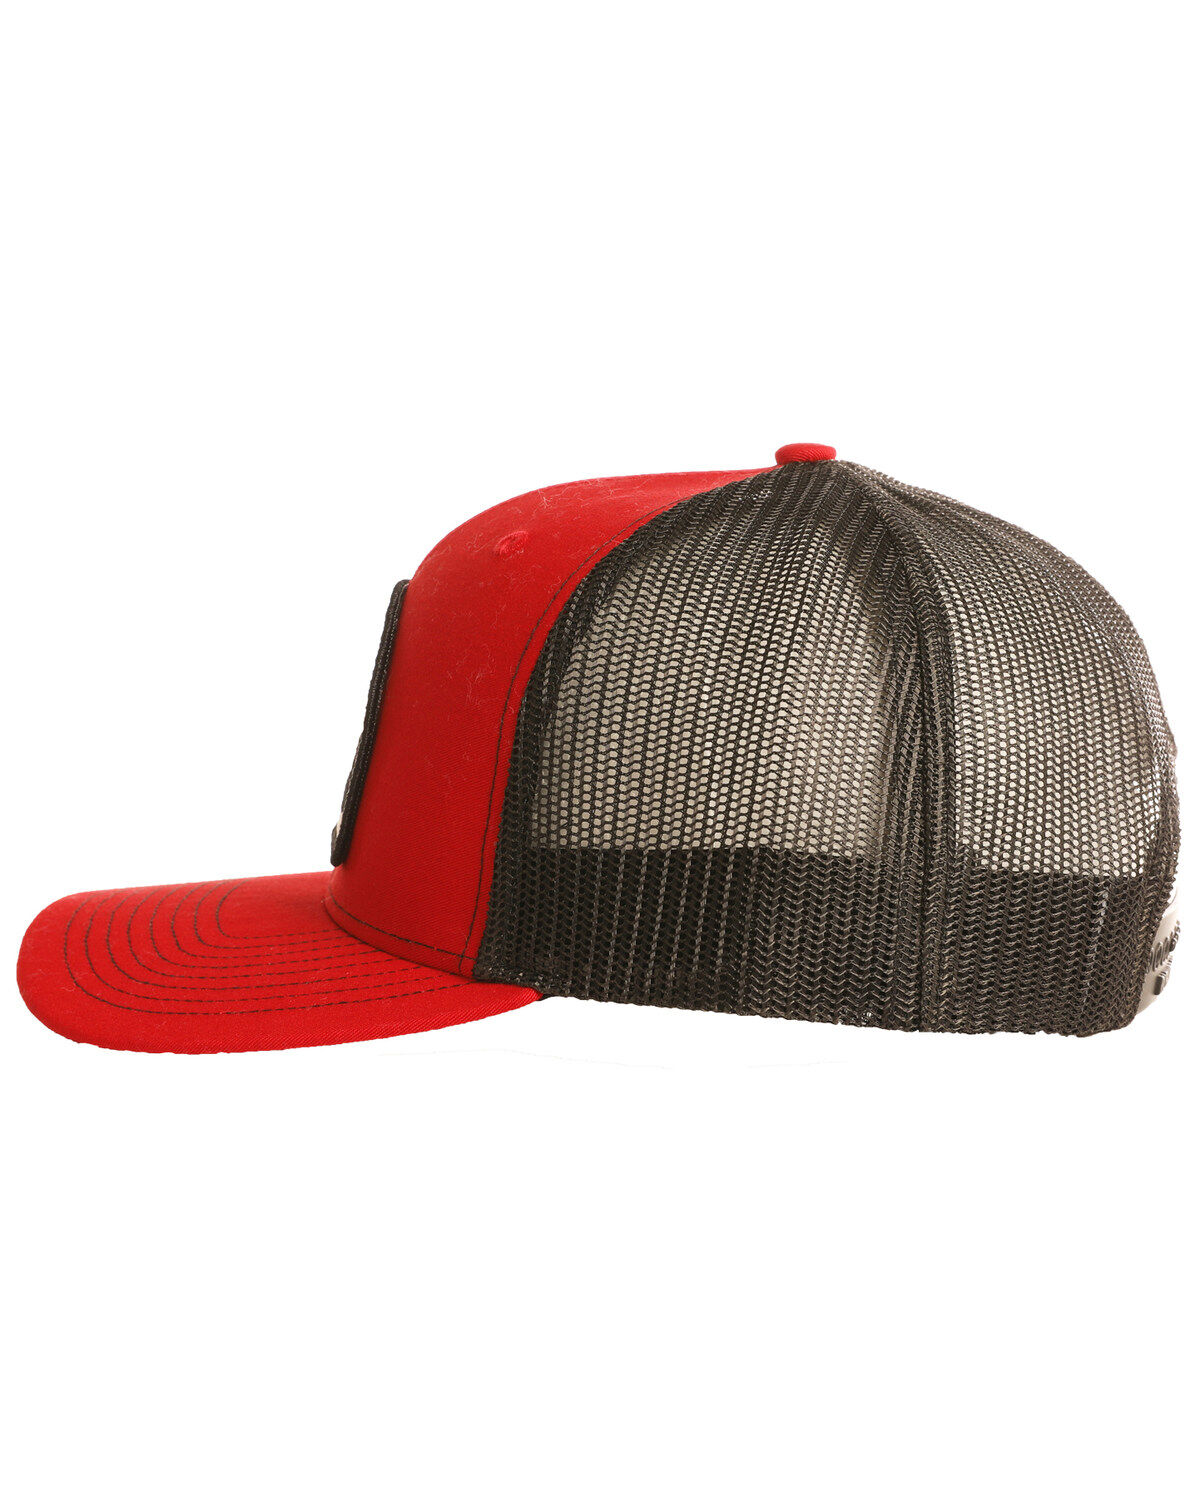 Hat Cap Licensed Professional Bull Riders PBR Black Mesh Dark Brown OC 